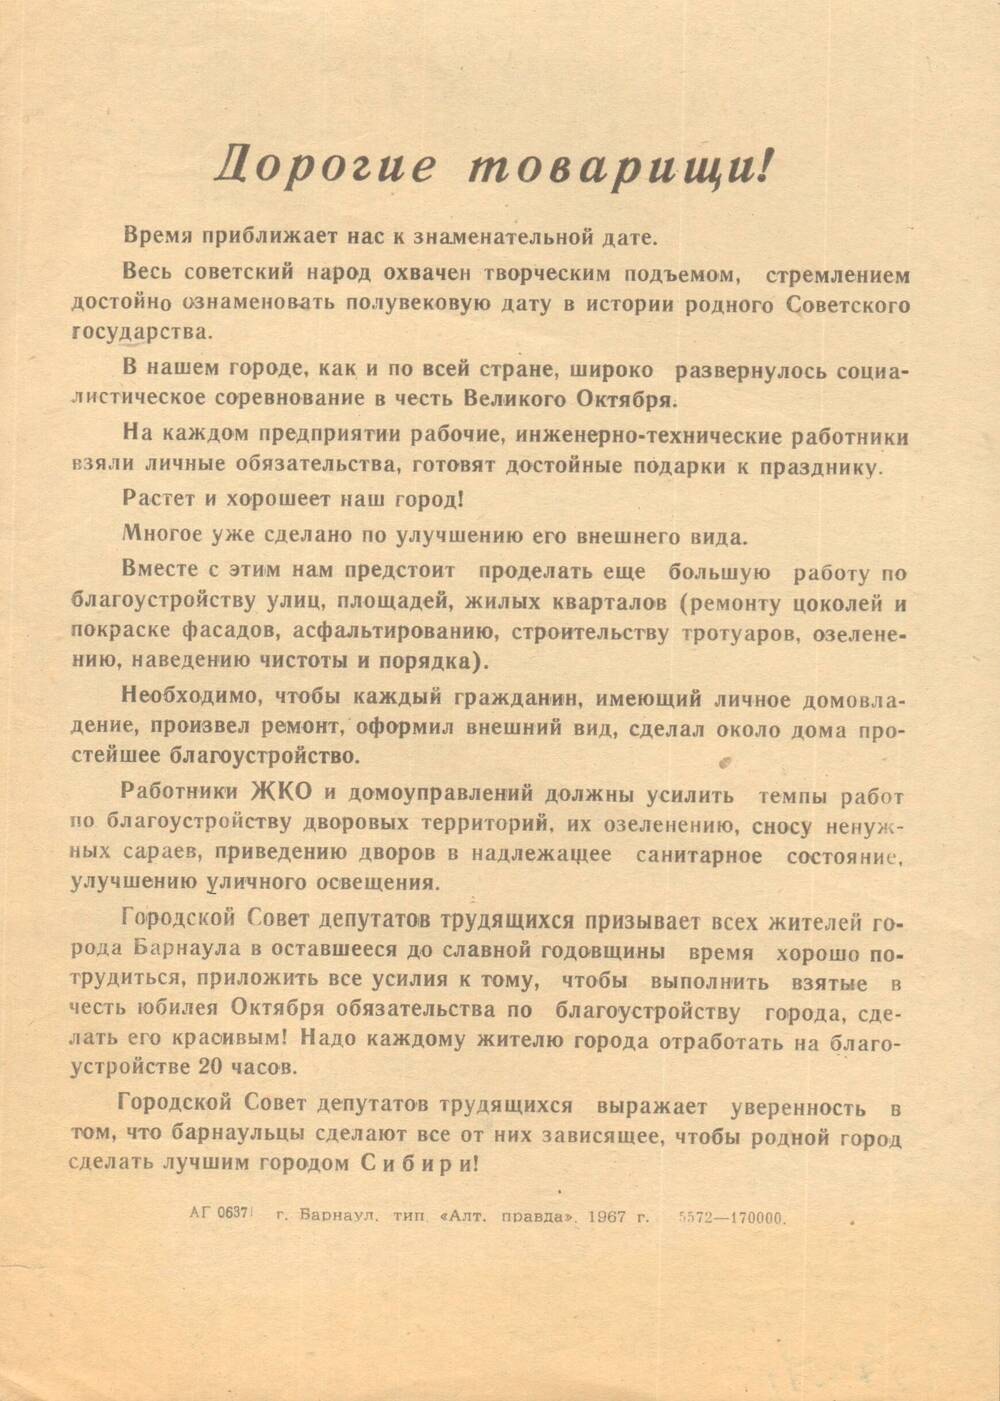 Листовка Барнаульского горсовета с обращением к барнаульцам в честь юбилея Октября